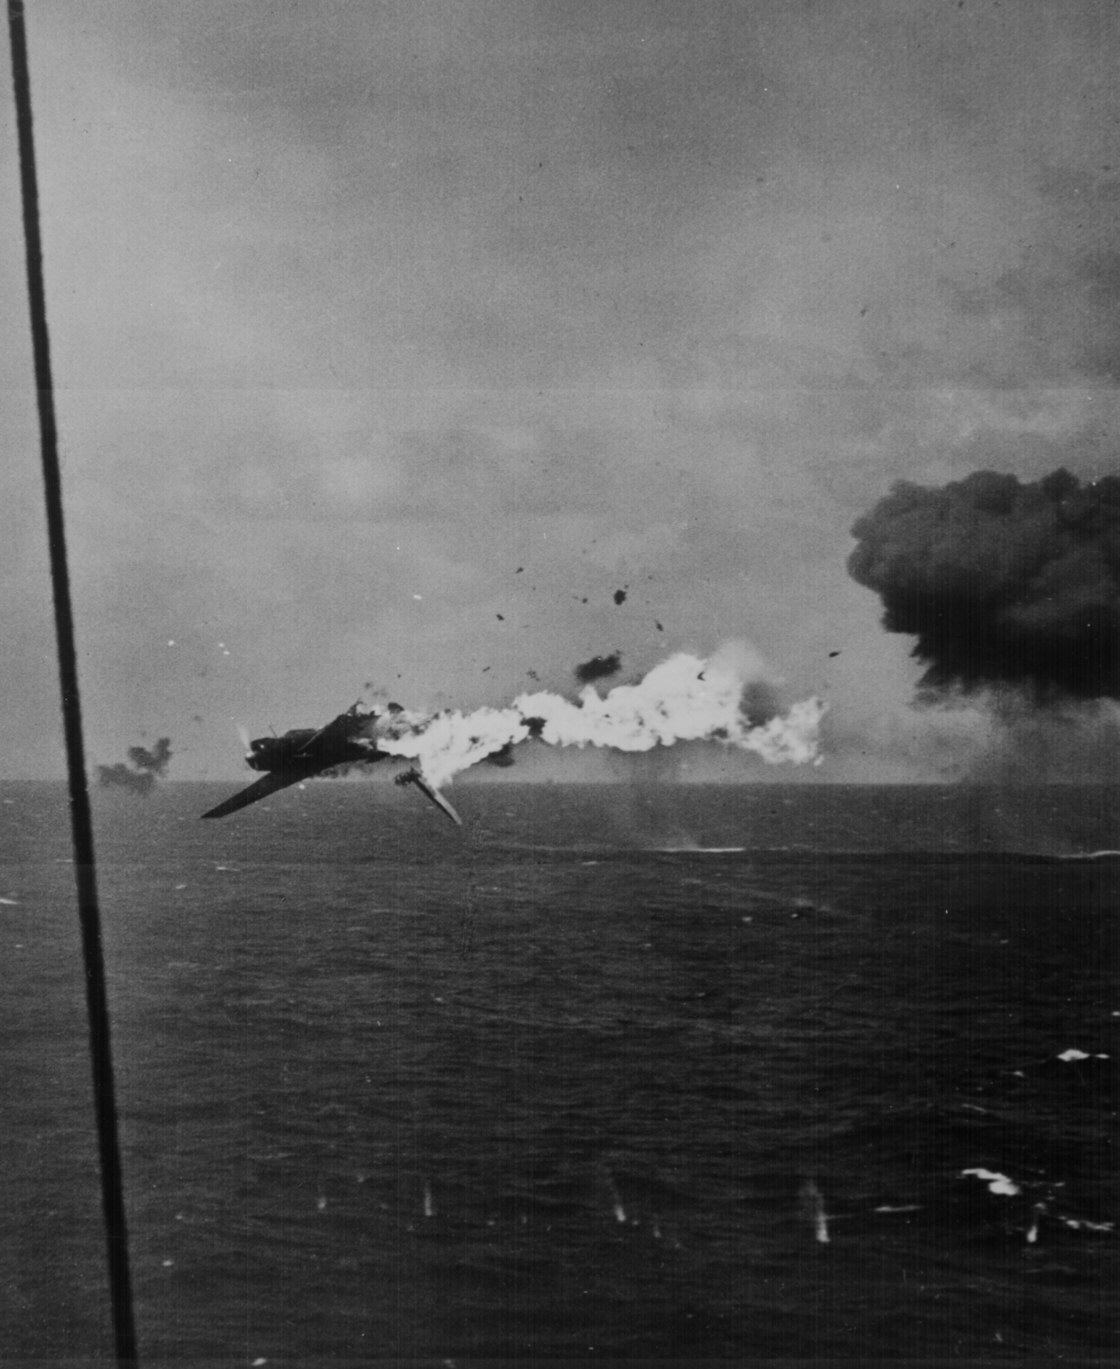 A6M Zero being shot down